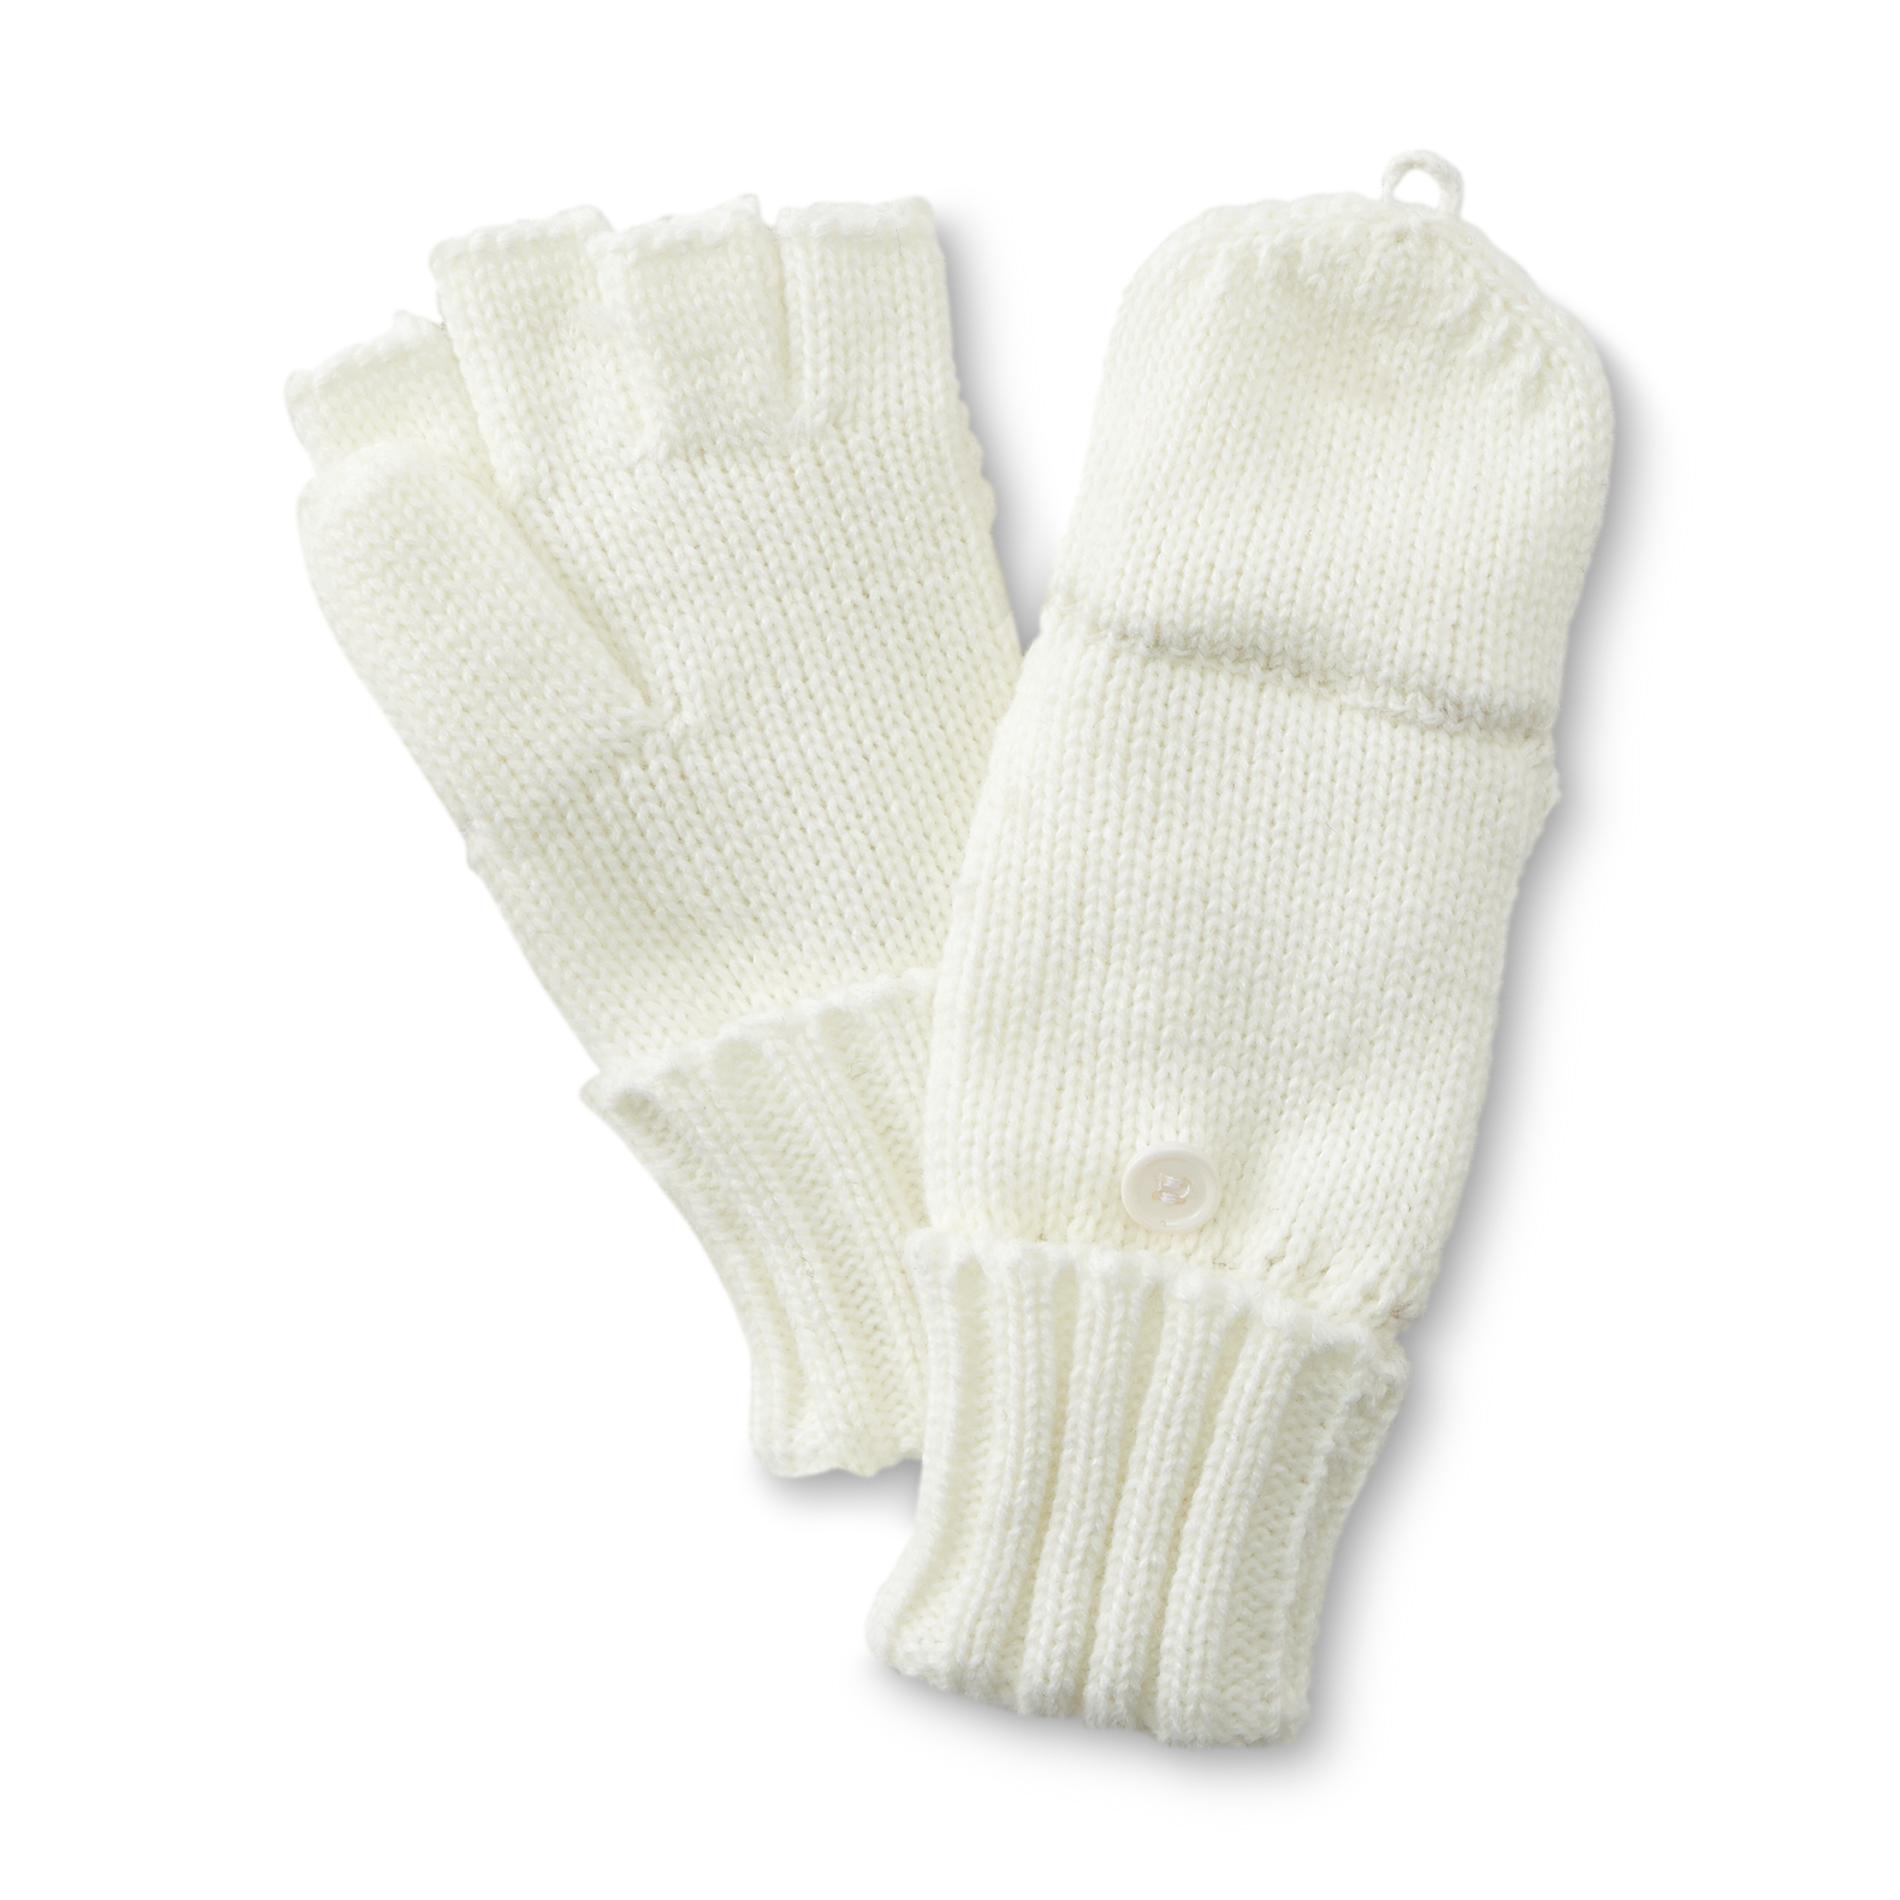 Joe Boxer Women's Convertible Fingerless Knit Gloves